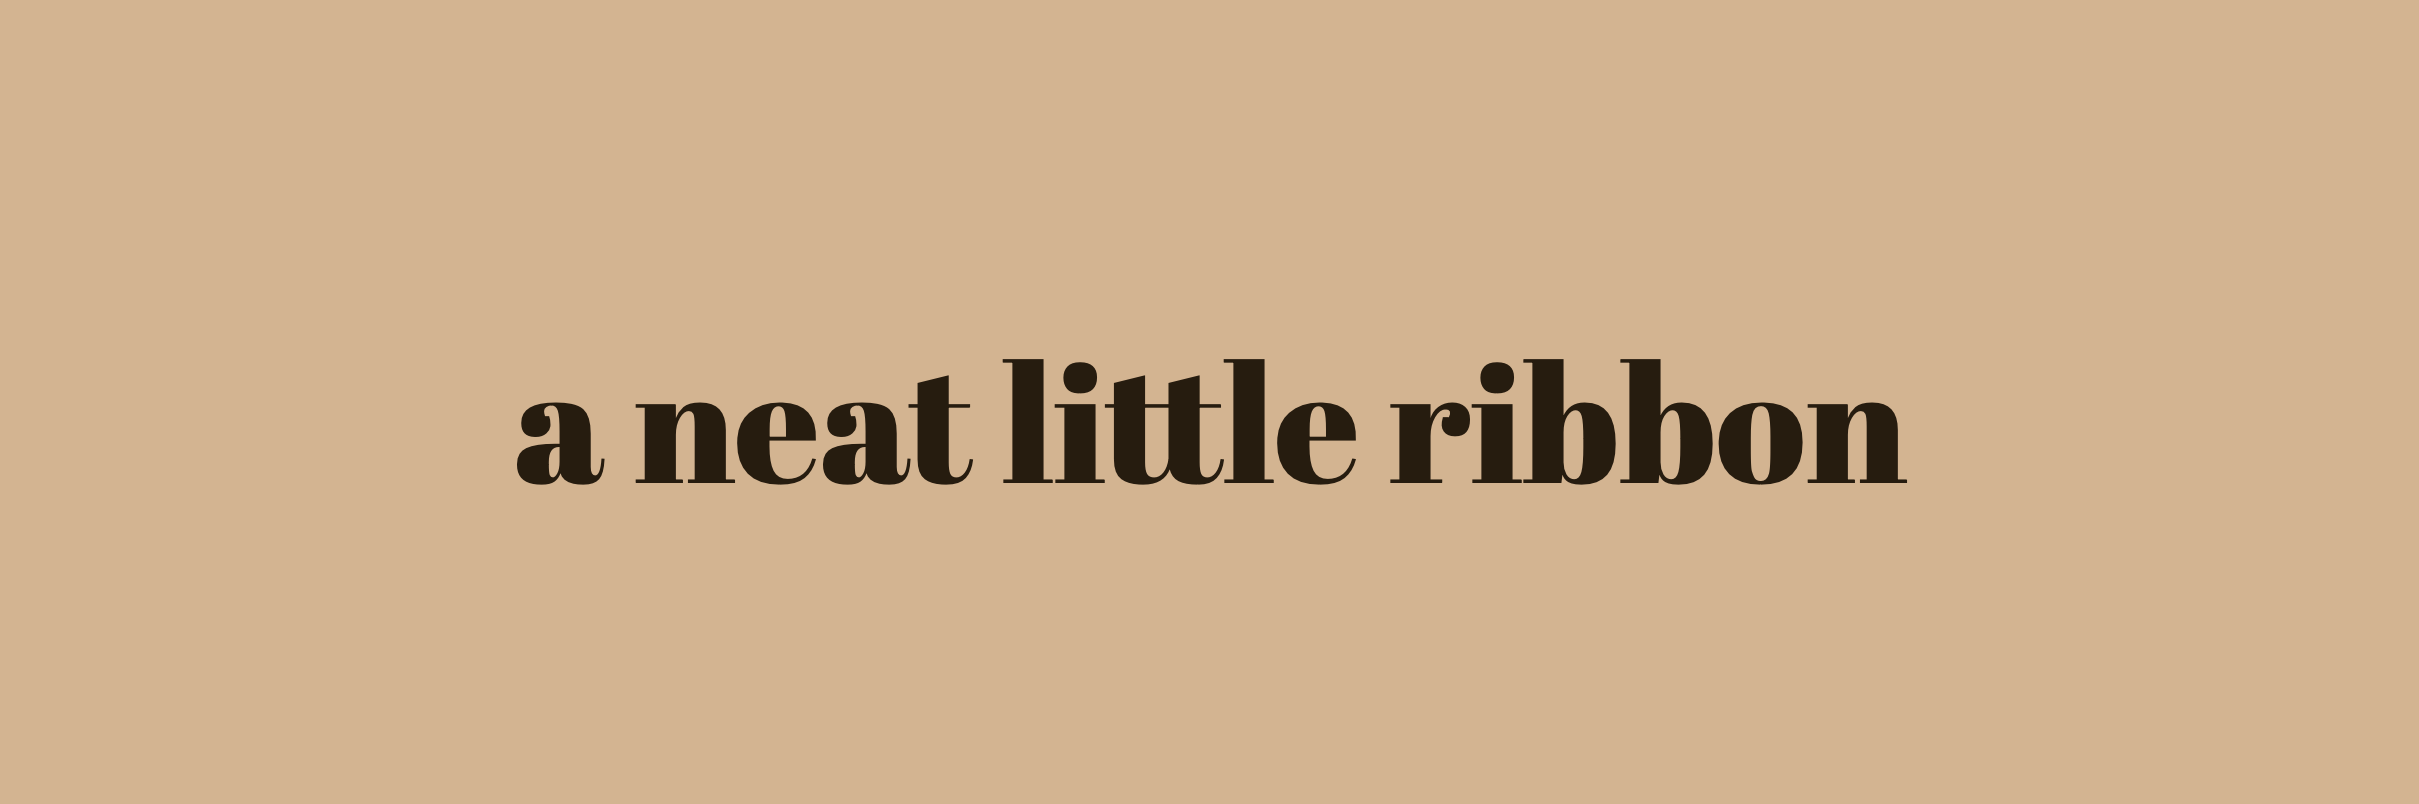 a neat little ribbon